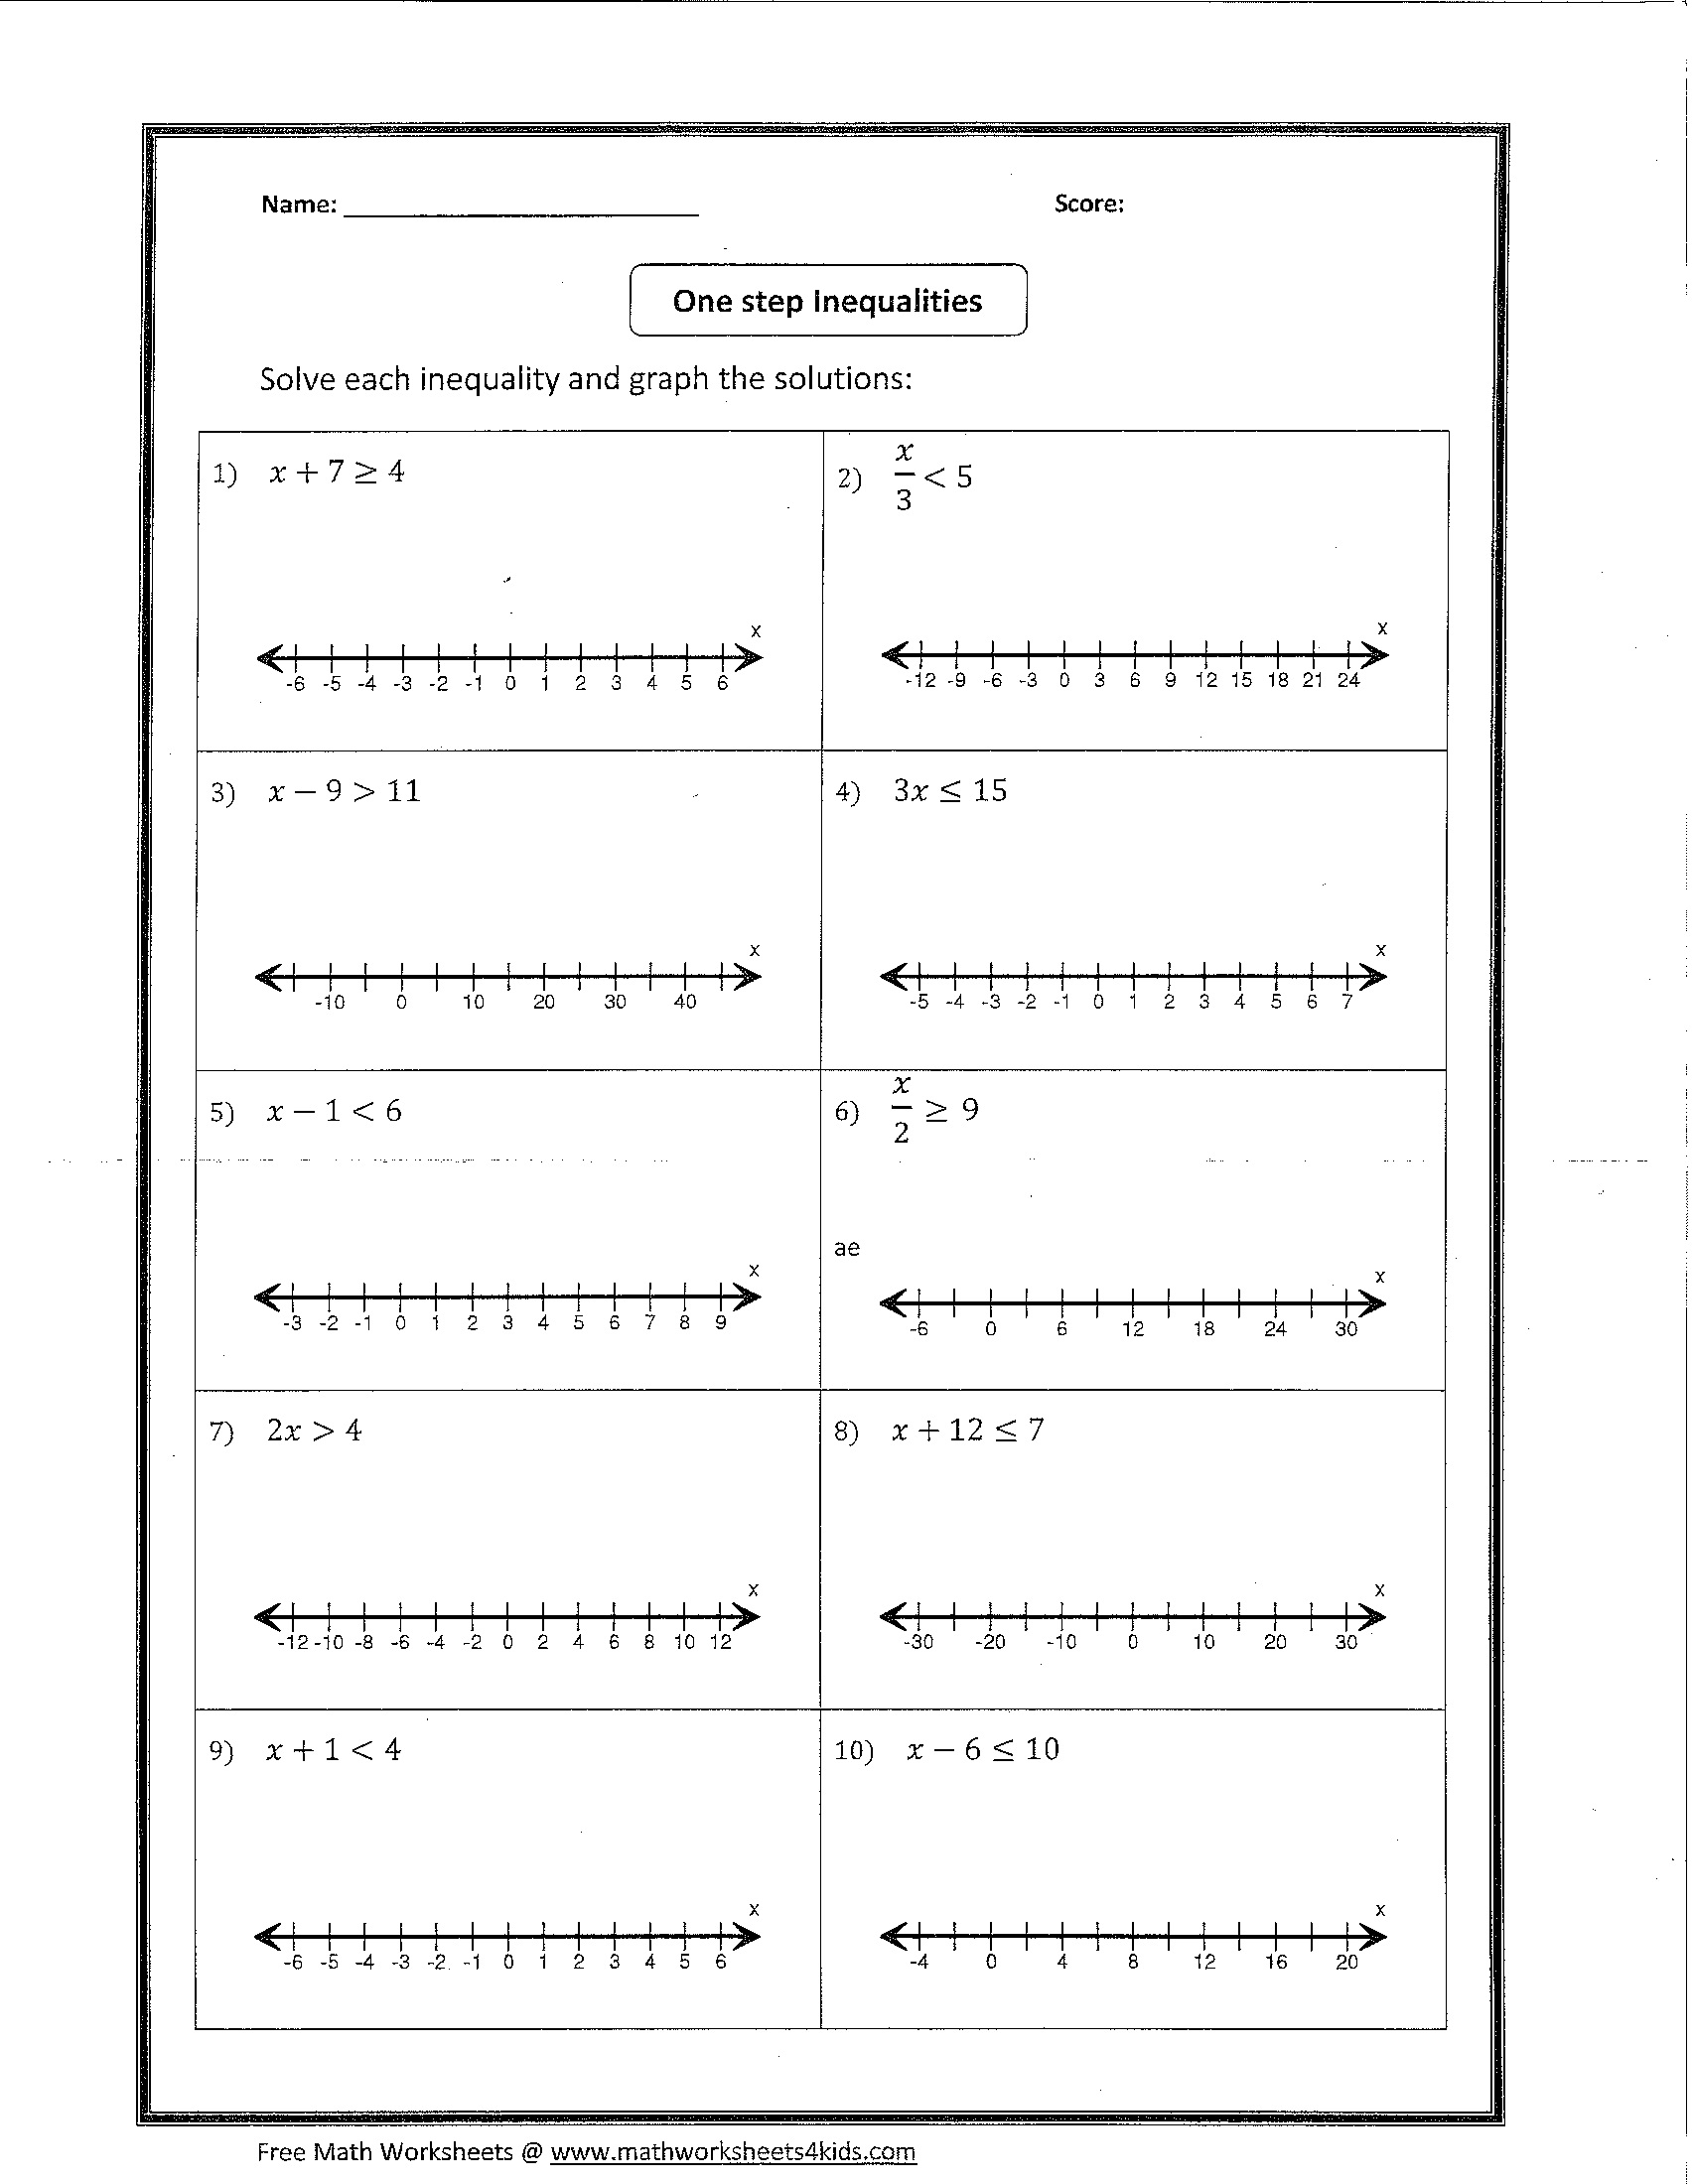 solving-one-step-inequalities-worksheet-pdf